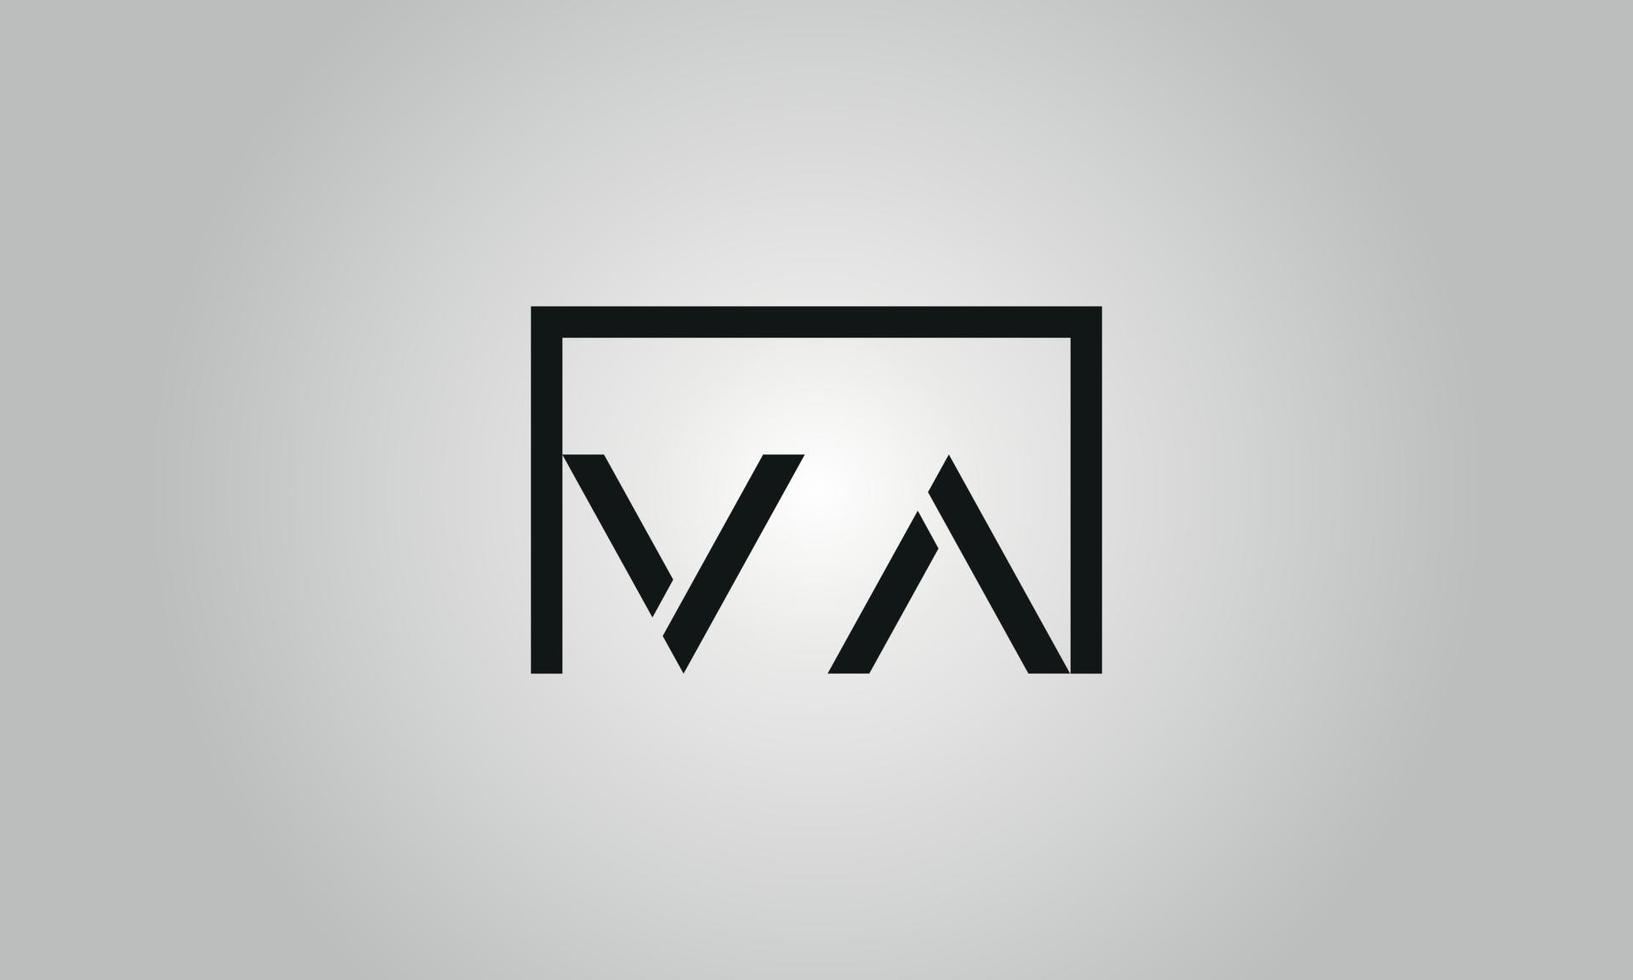 Buchstabe va-Logo-Design. va-Logo mit quadratischer Form in schwarzen Farben Vektor kostenlose Vektorvorlage.